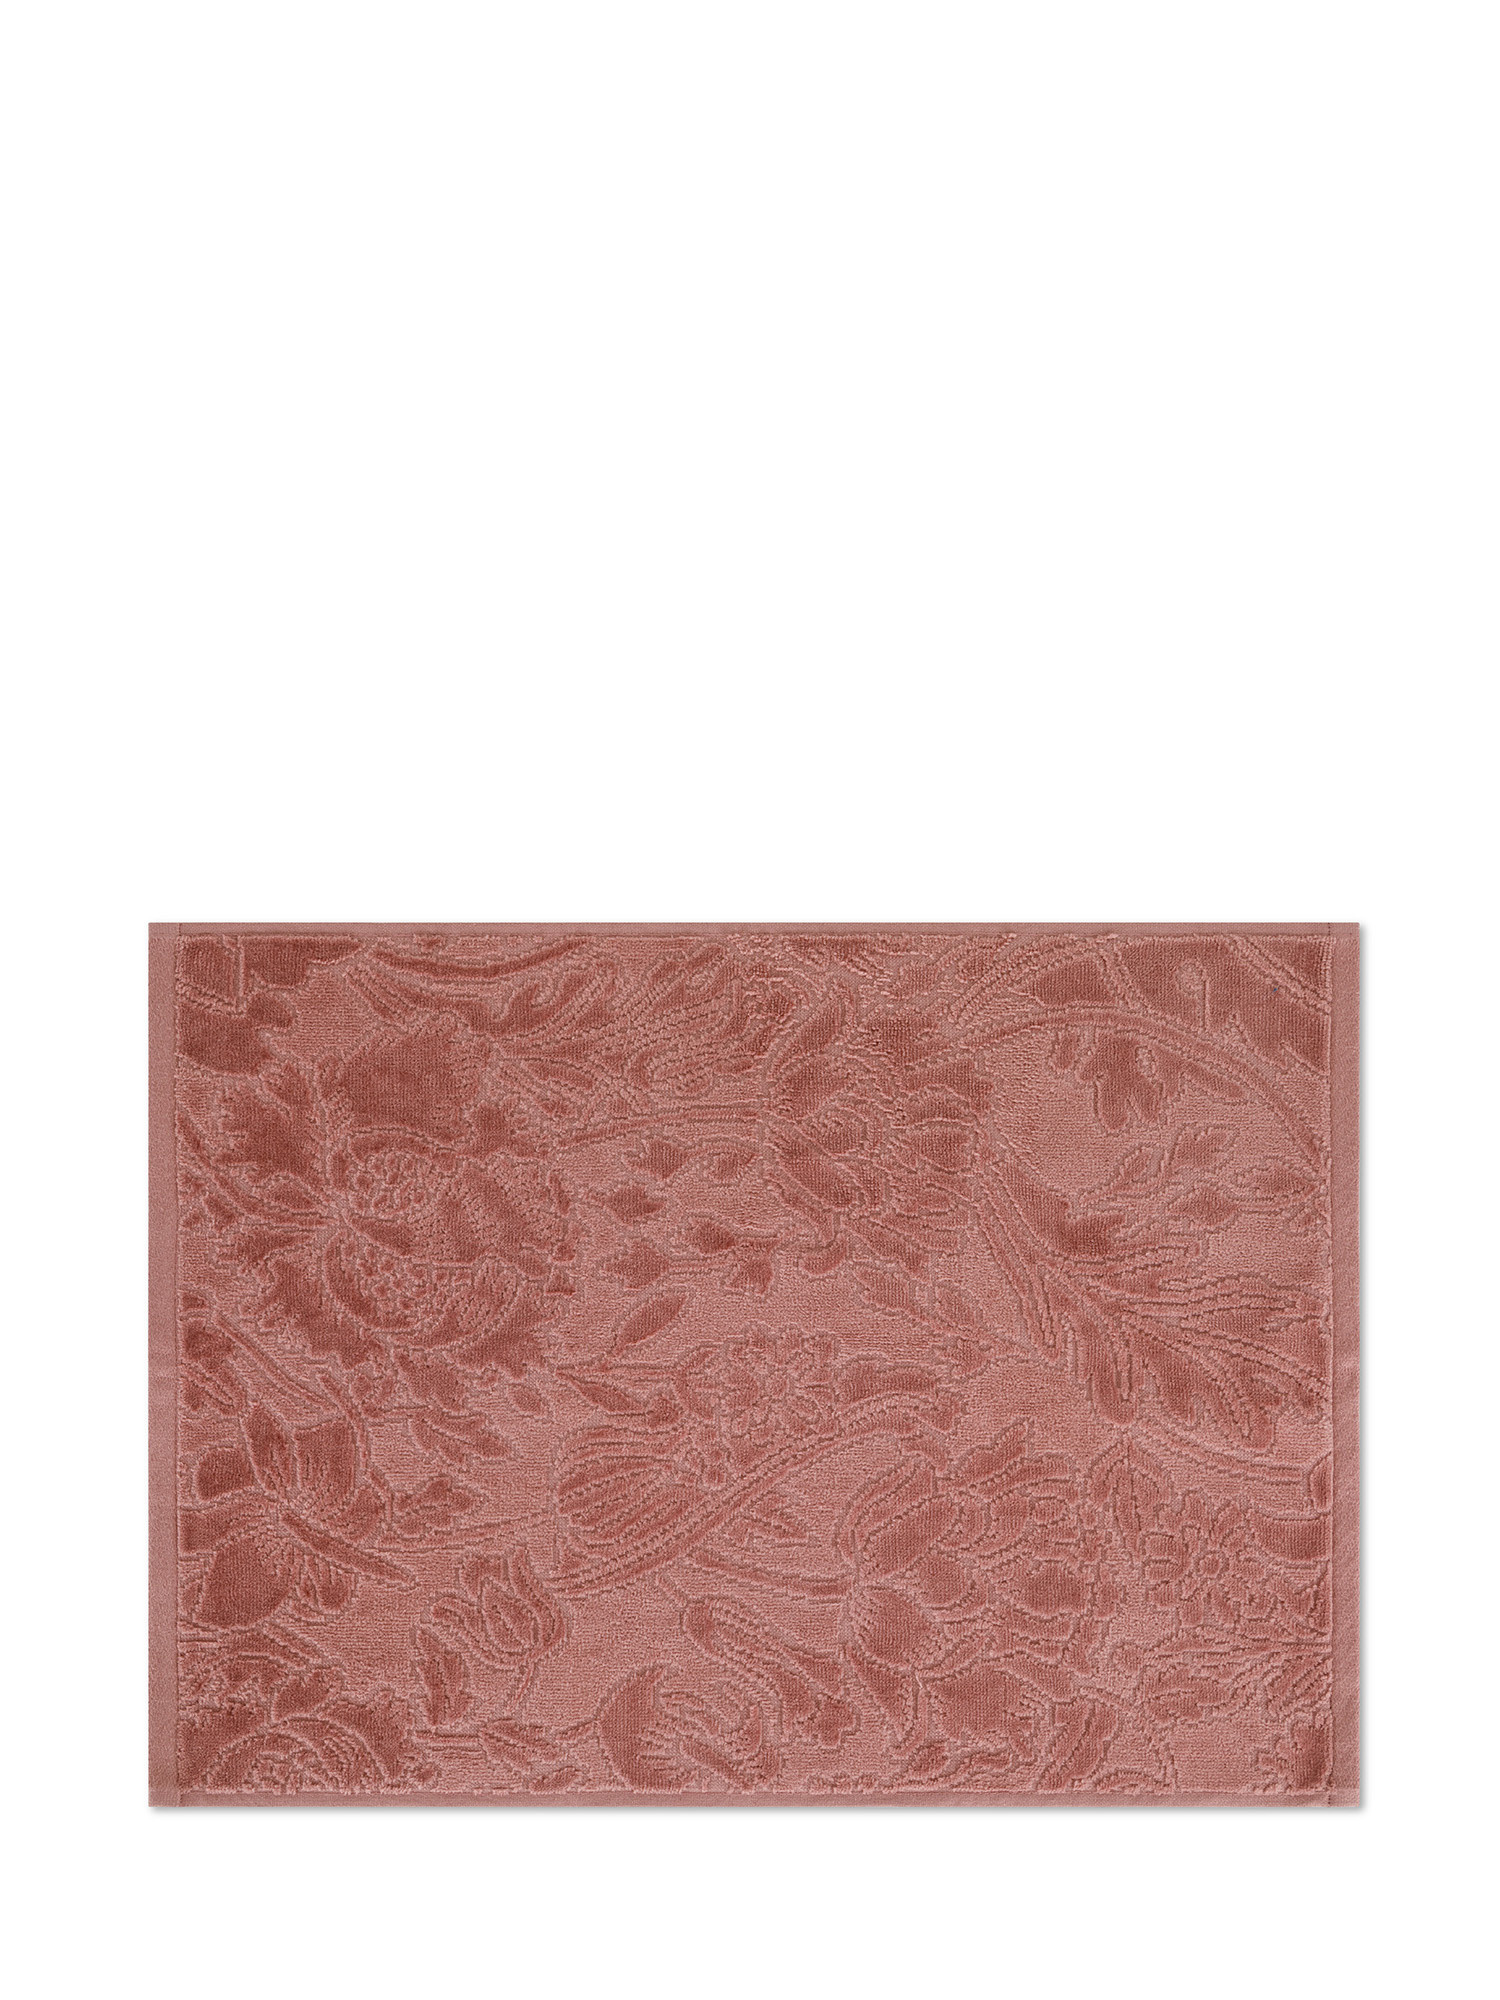 Asciugamano in velour di puro cotone tinta unita con lavorazione fiori, Rosa, large image number 1